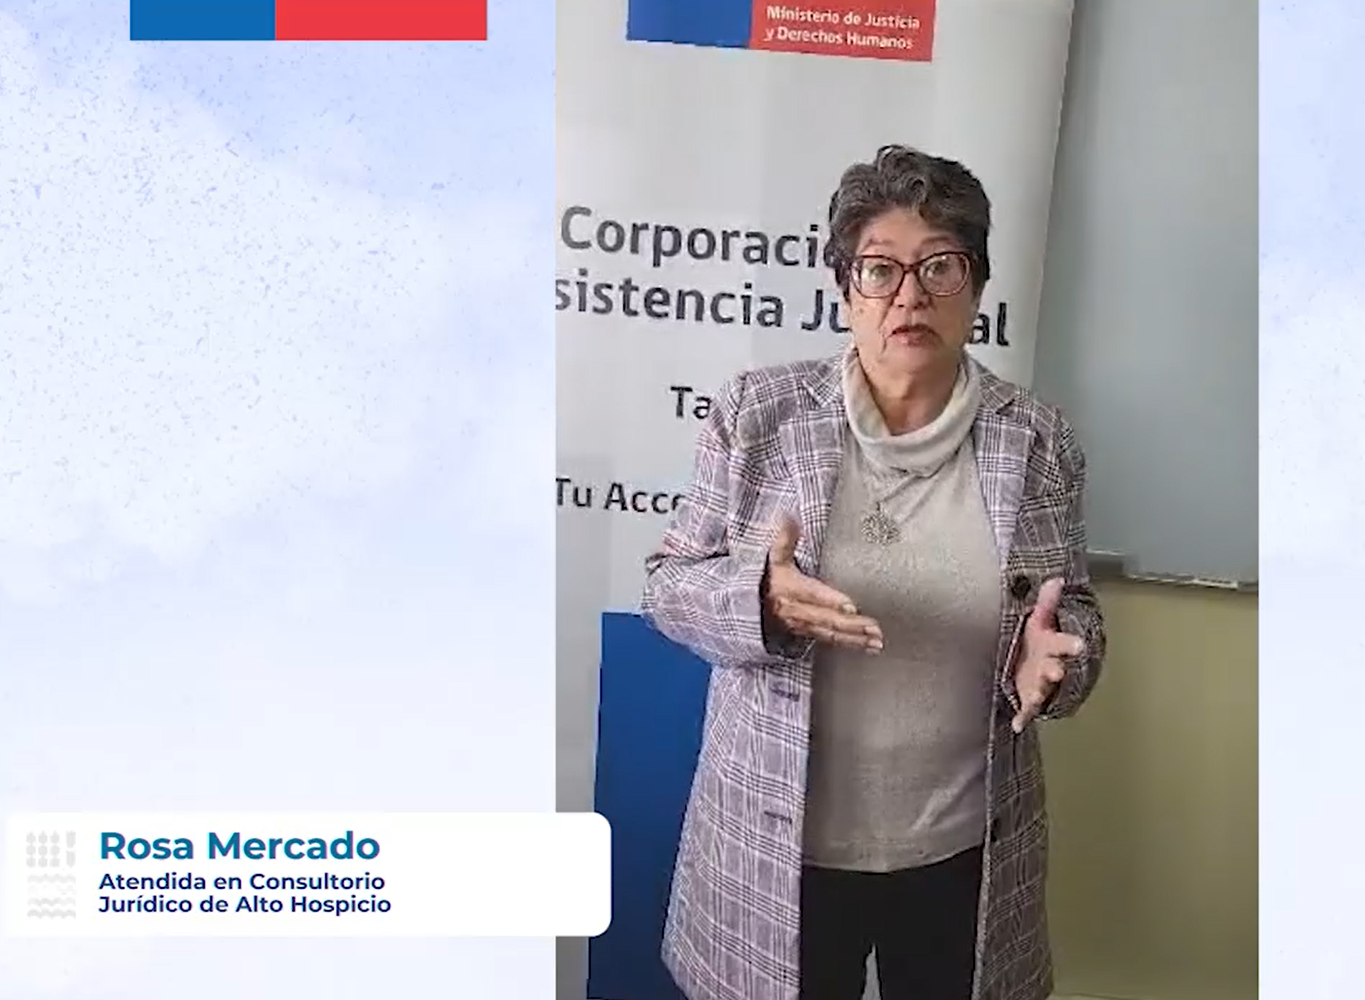 Testimonio de la señora Rosa Mercado Rojas, usuaria del Consultorio Jurídico de Alto Hospicio